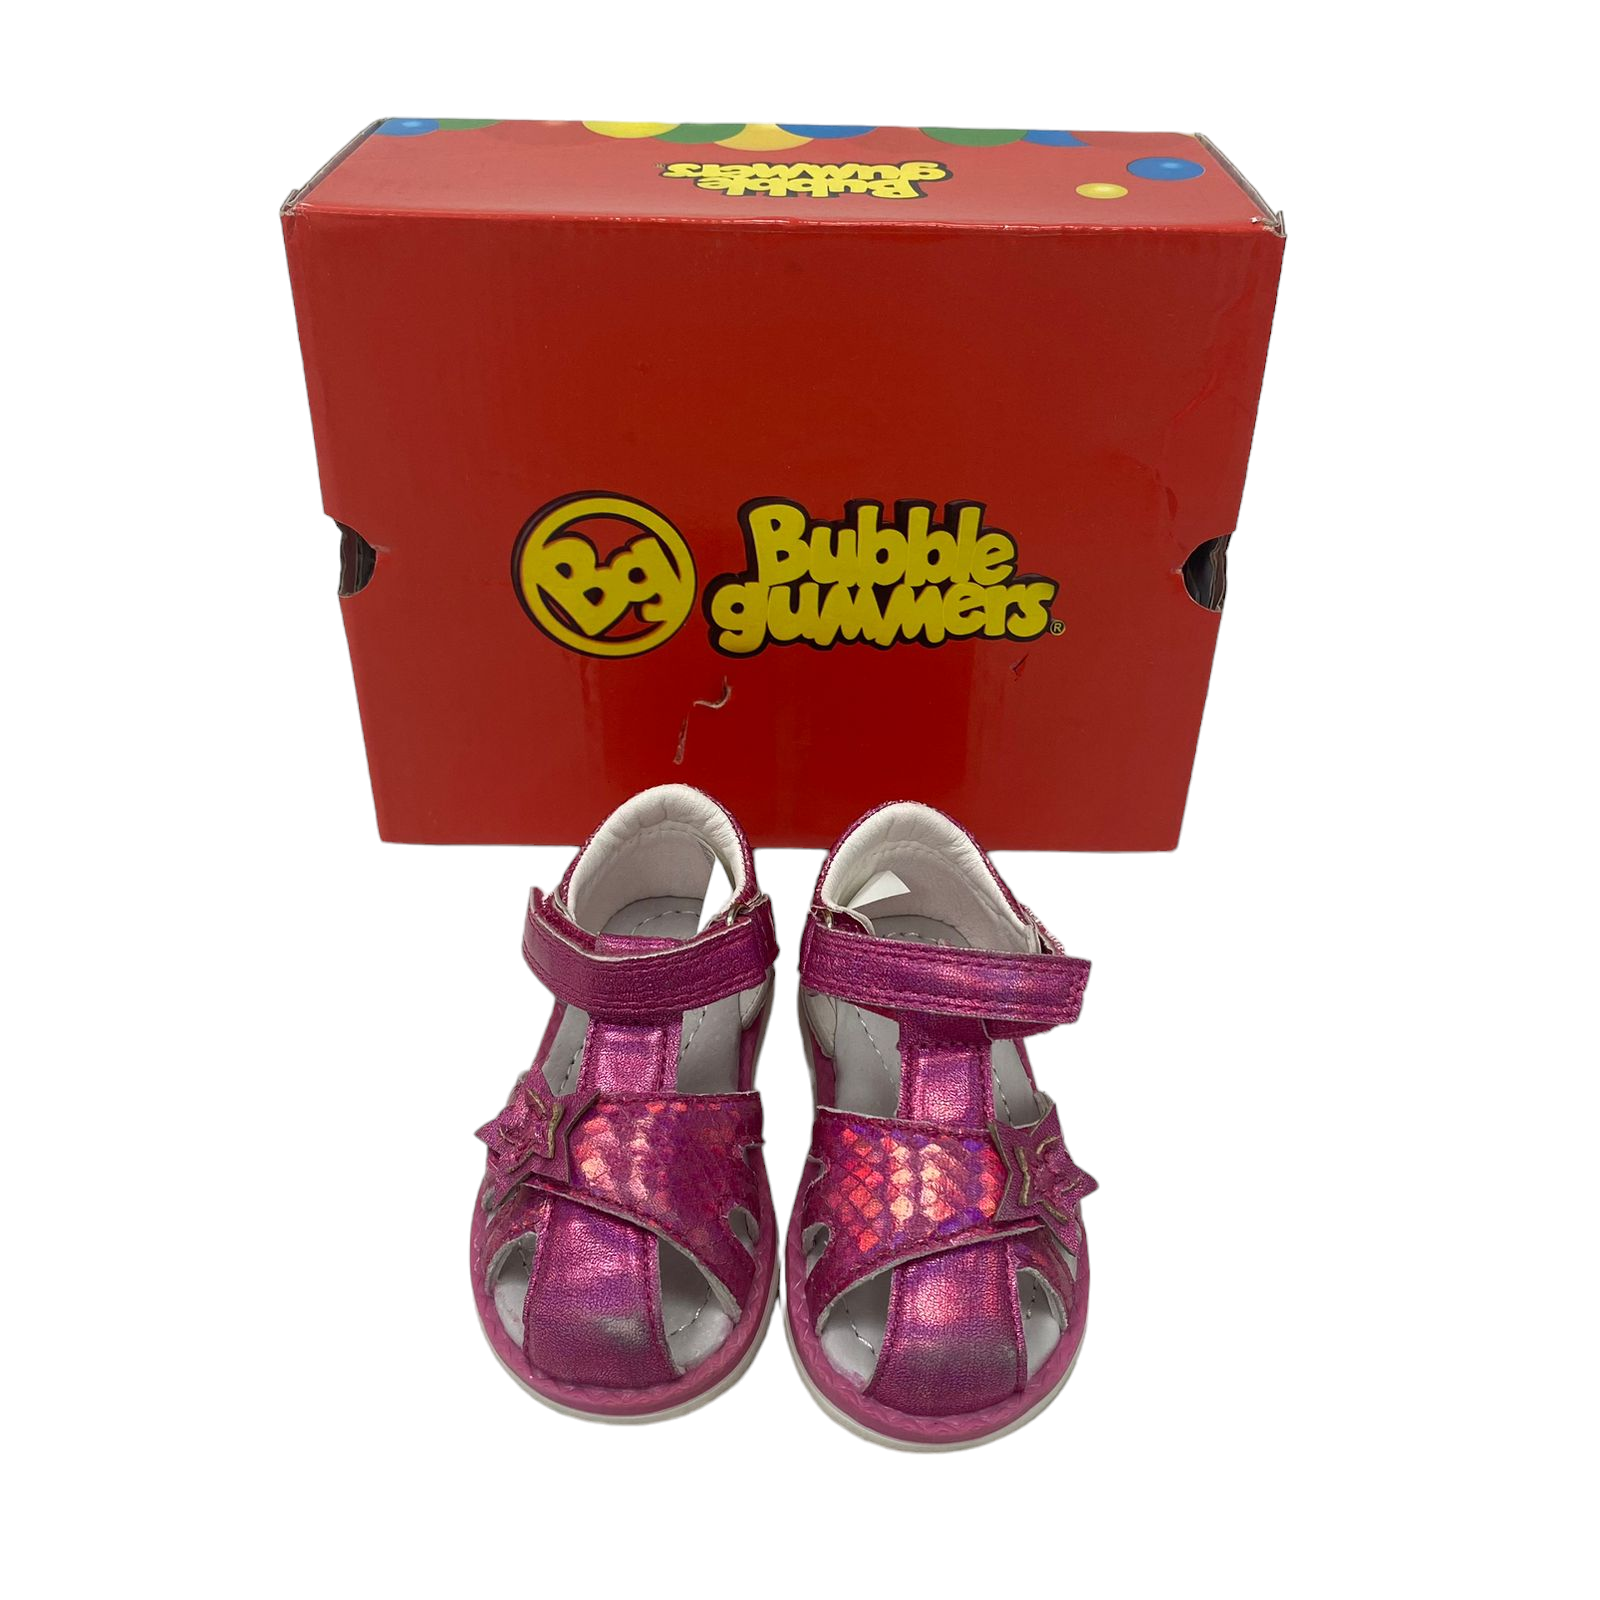 Chalas rosadas tornasol con estrella Bubble gummers con su caja